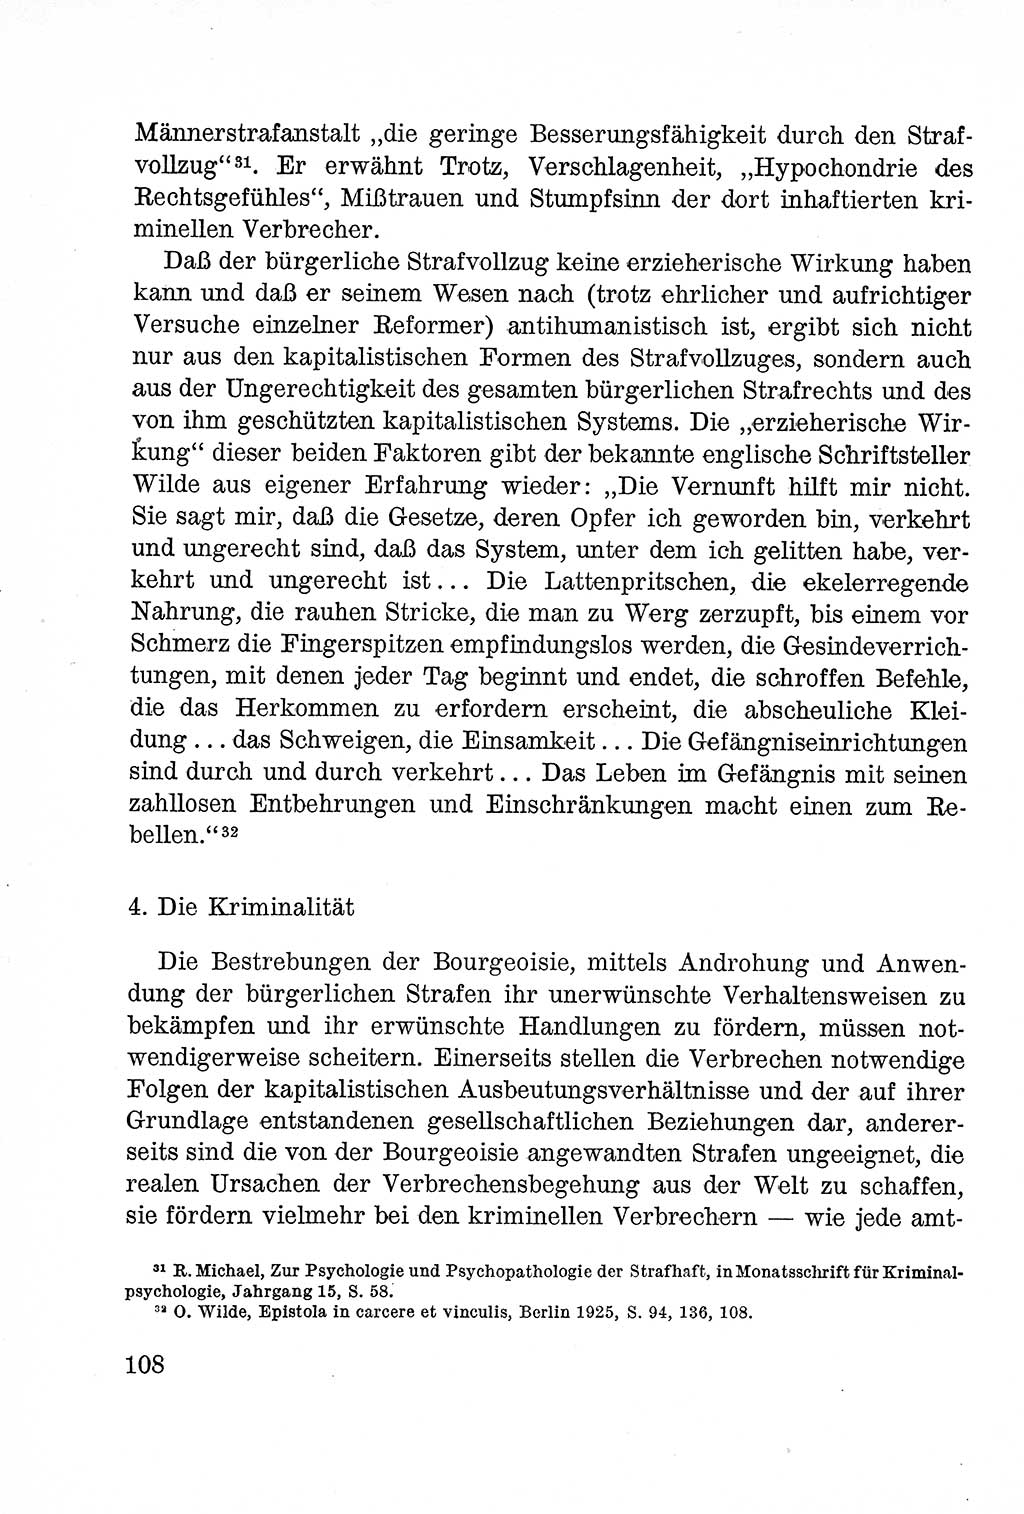 Lehrbuch des Strafrechts der Deutschen Demokratischen Republik (DDR), Allgemeiner Teil 1957, Seite 108 (Lb. Strafr. DDR AT 1957, S. 108)